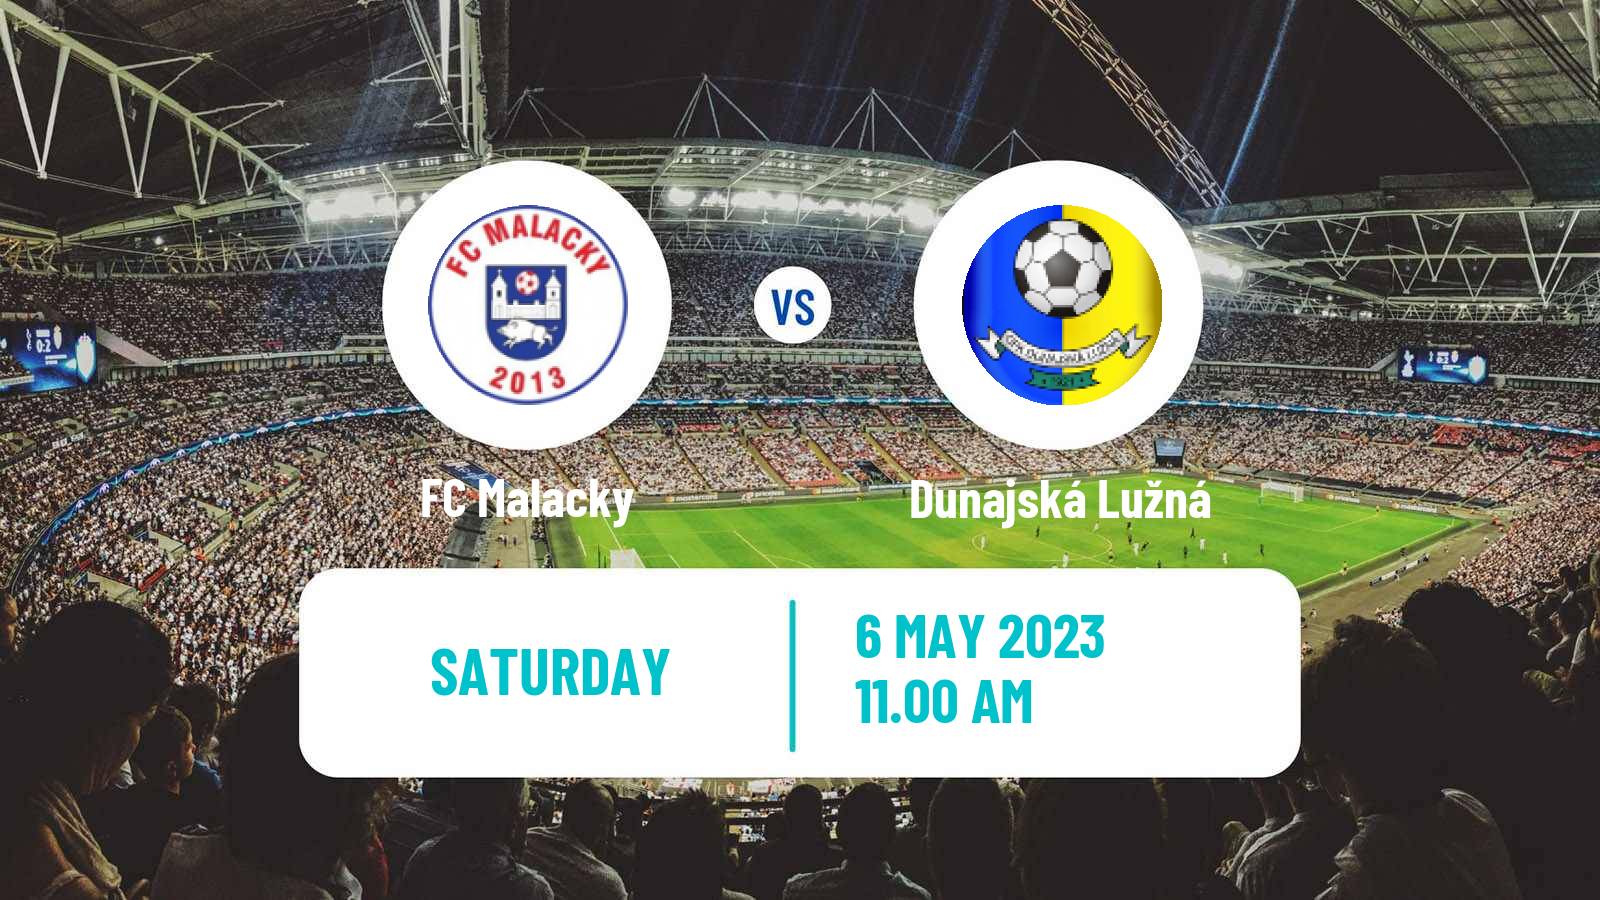 Soccer Slovak 4 Liga Bratislava Malacky - Dunajská Lužná